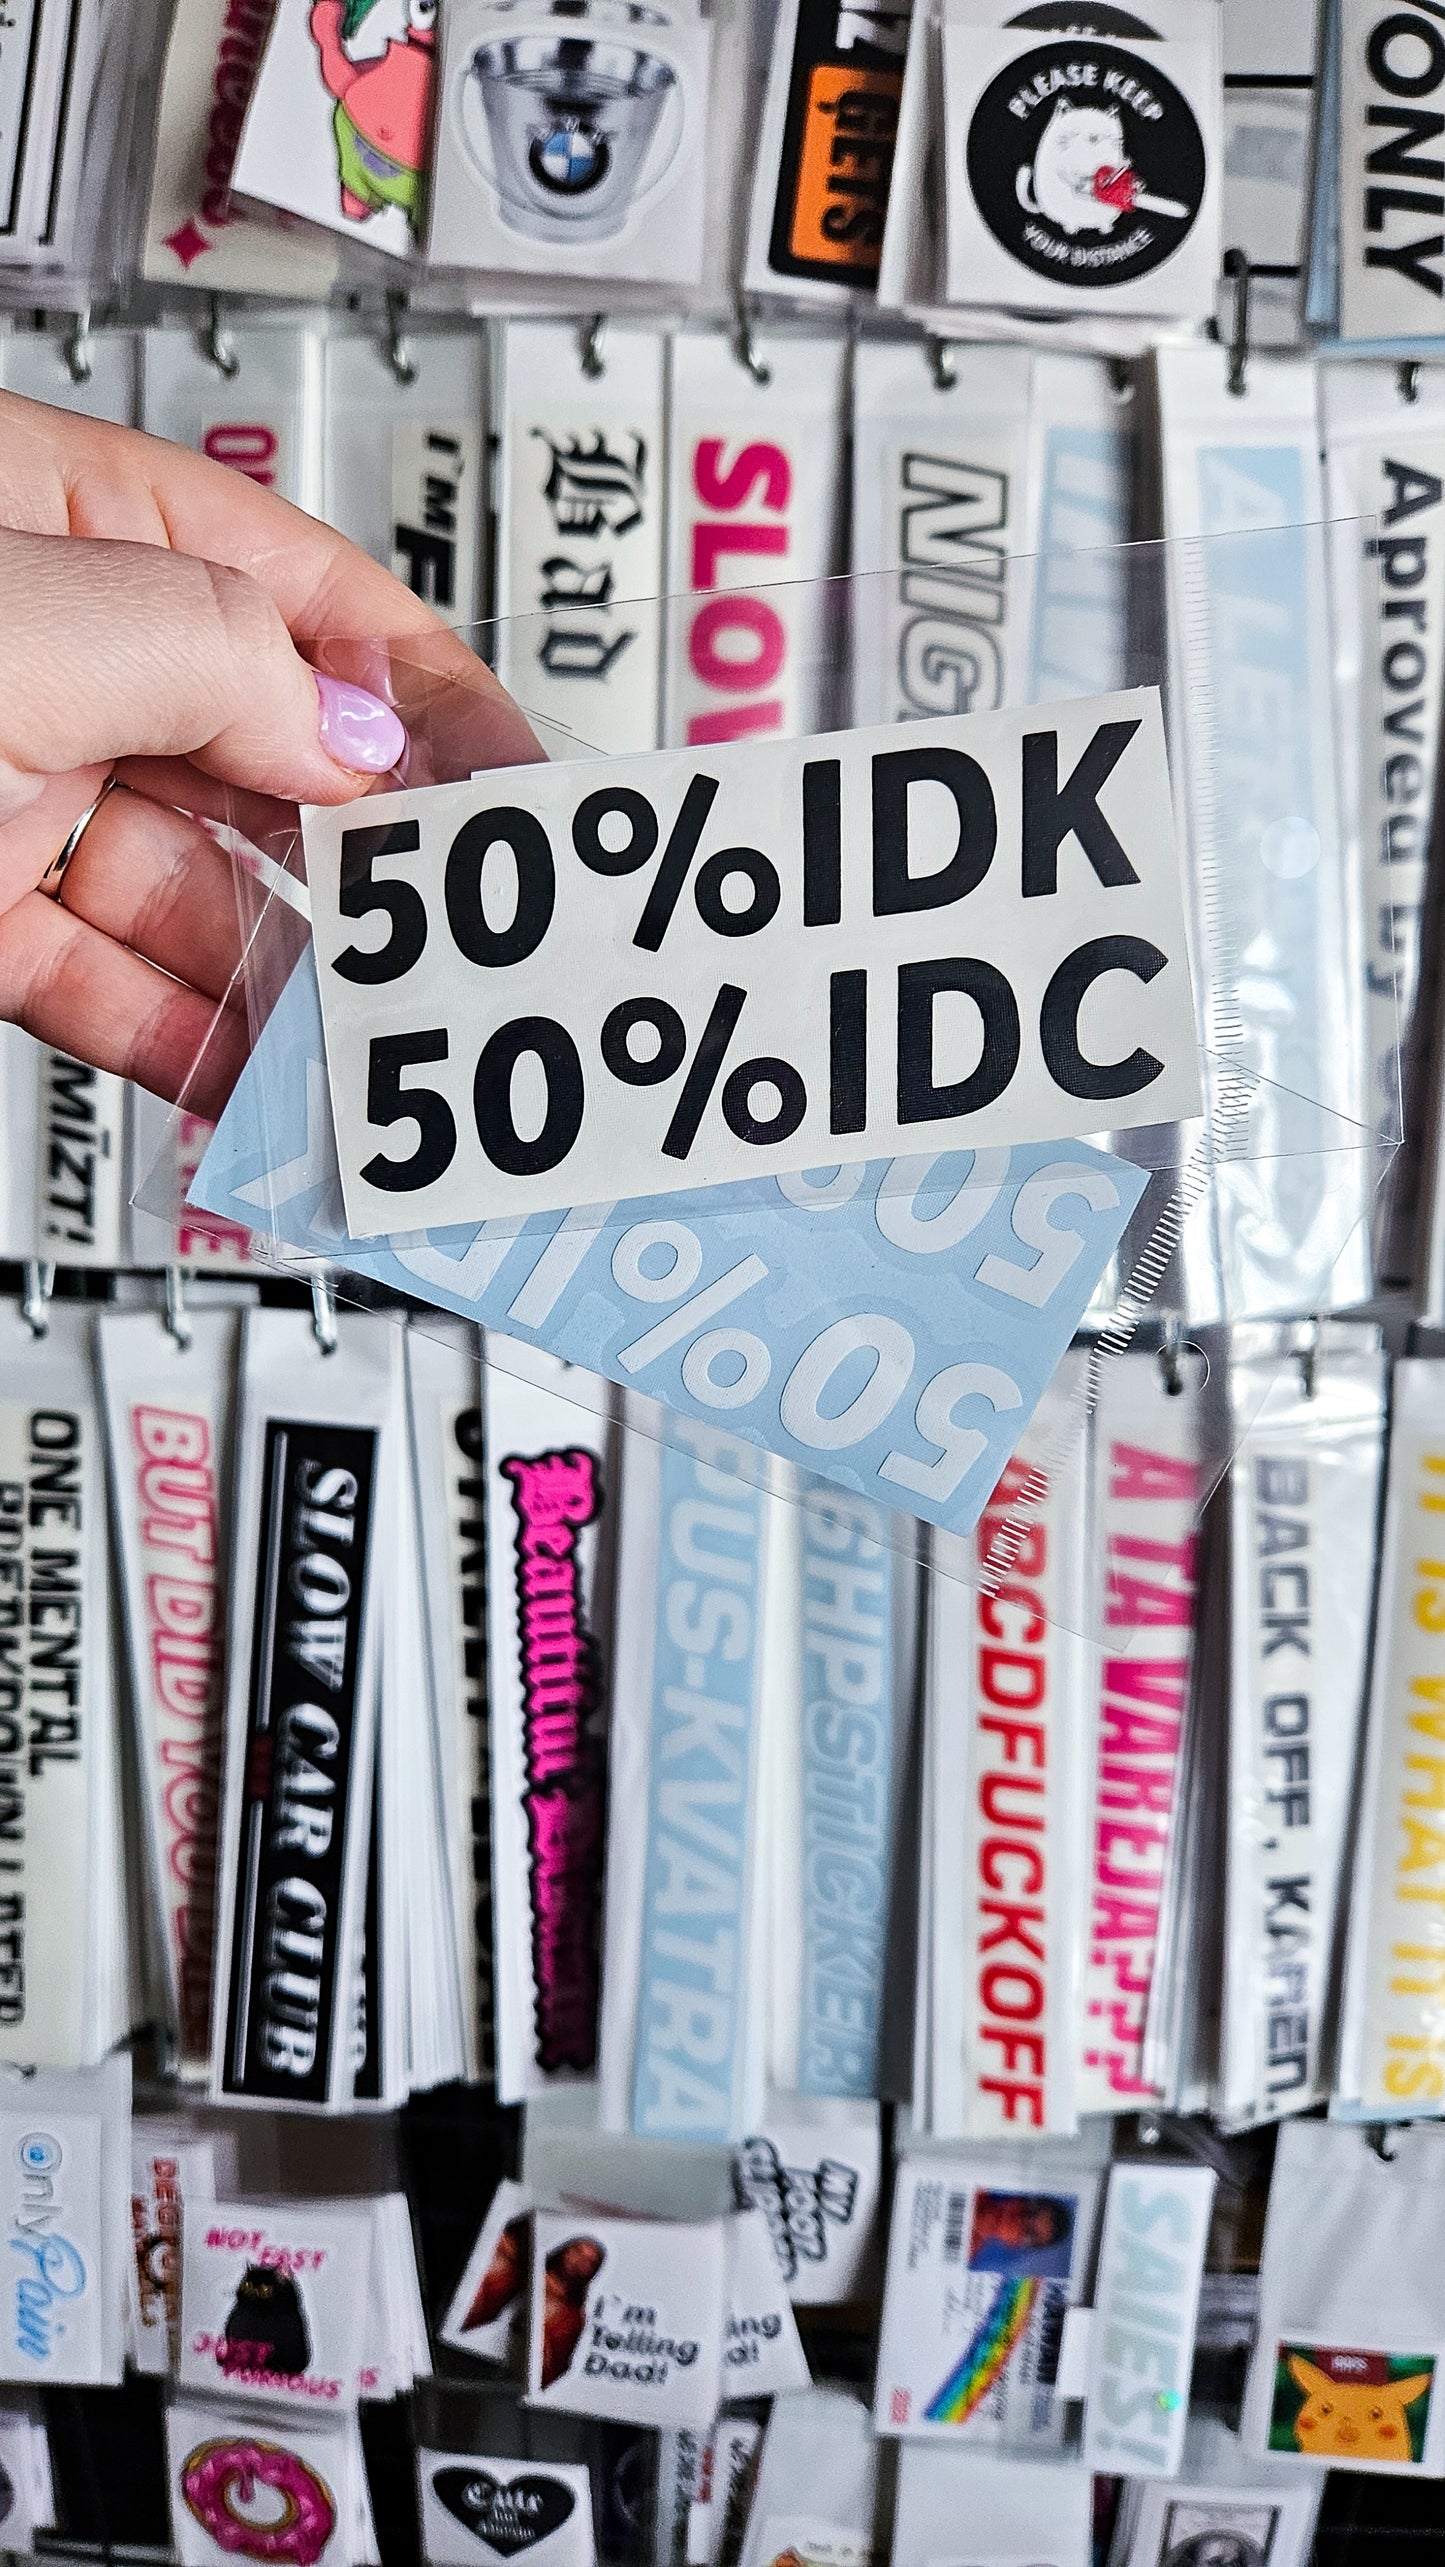 ''50% IDK 50% IDC'' - Plotted Vinyl Sticker